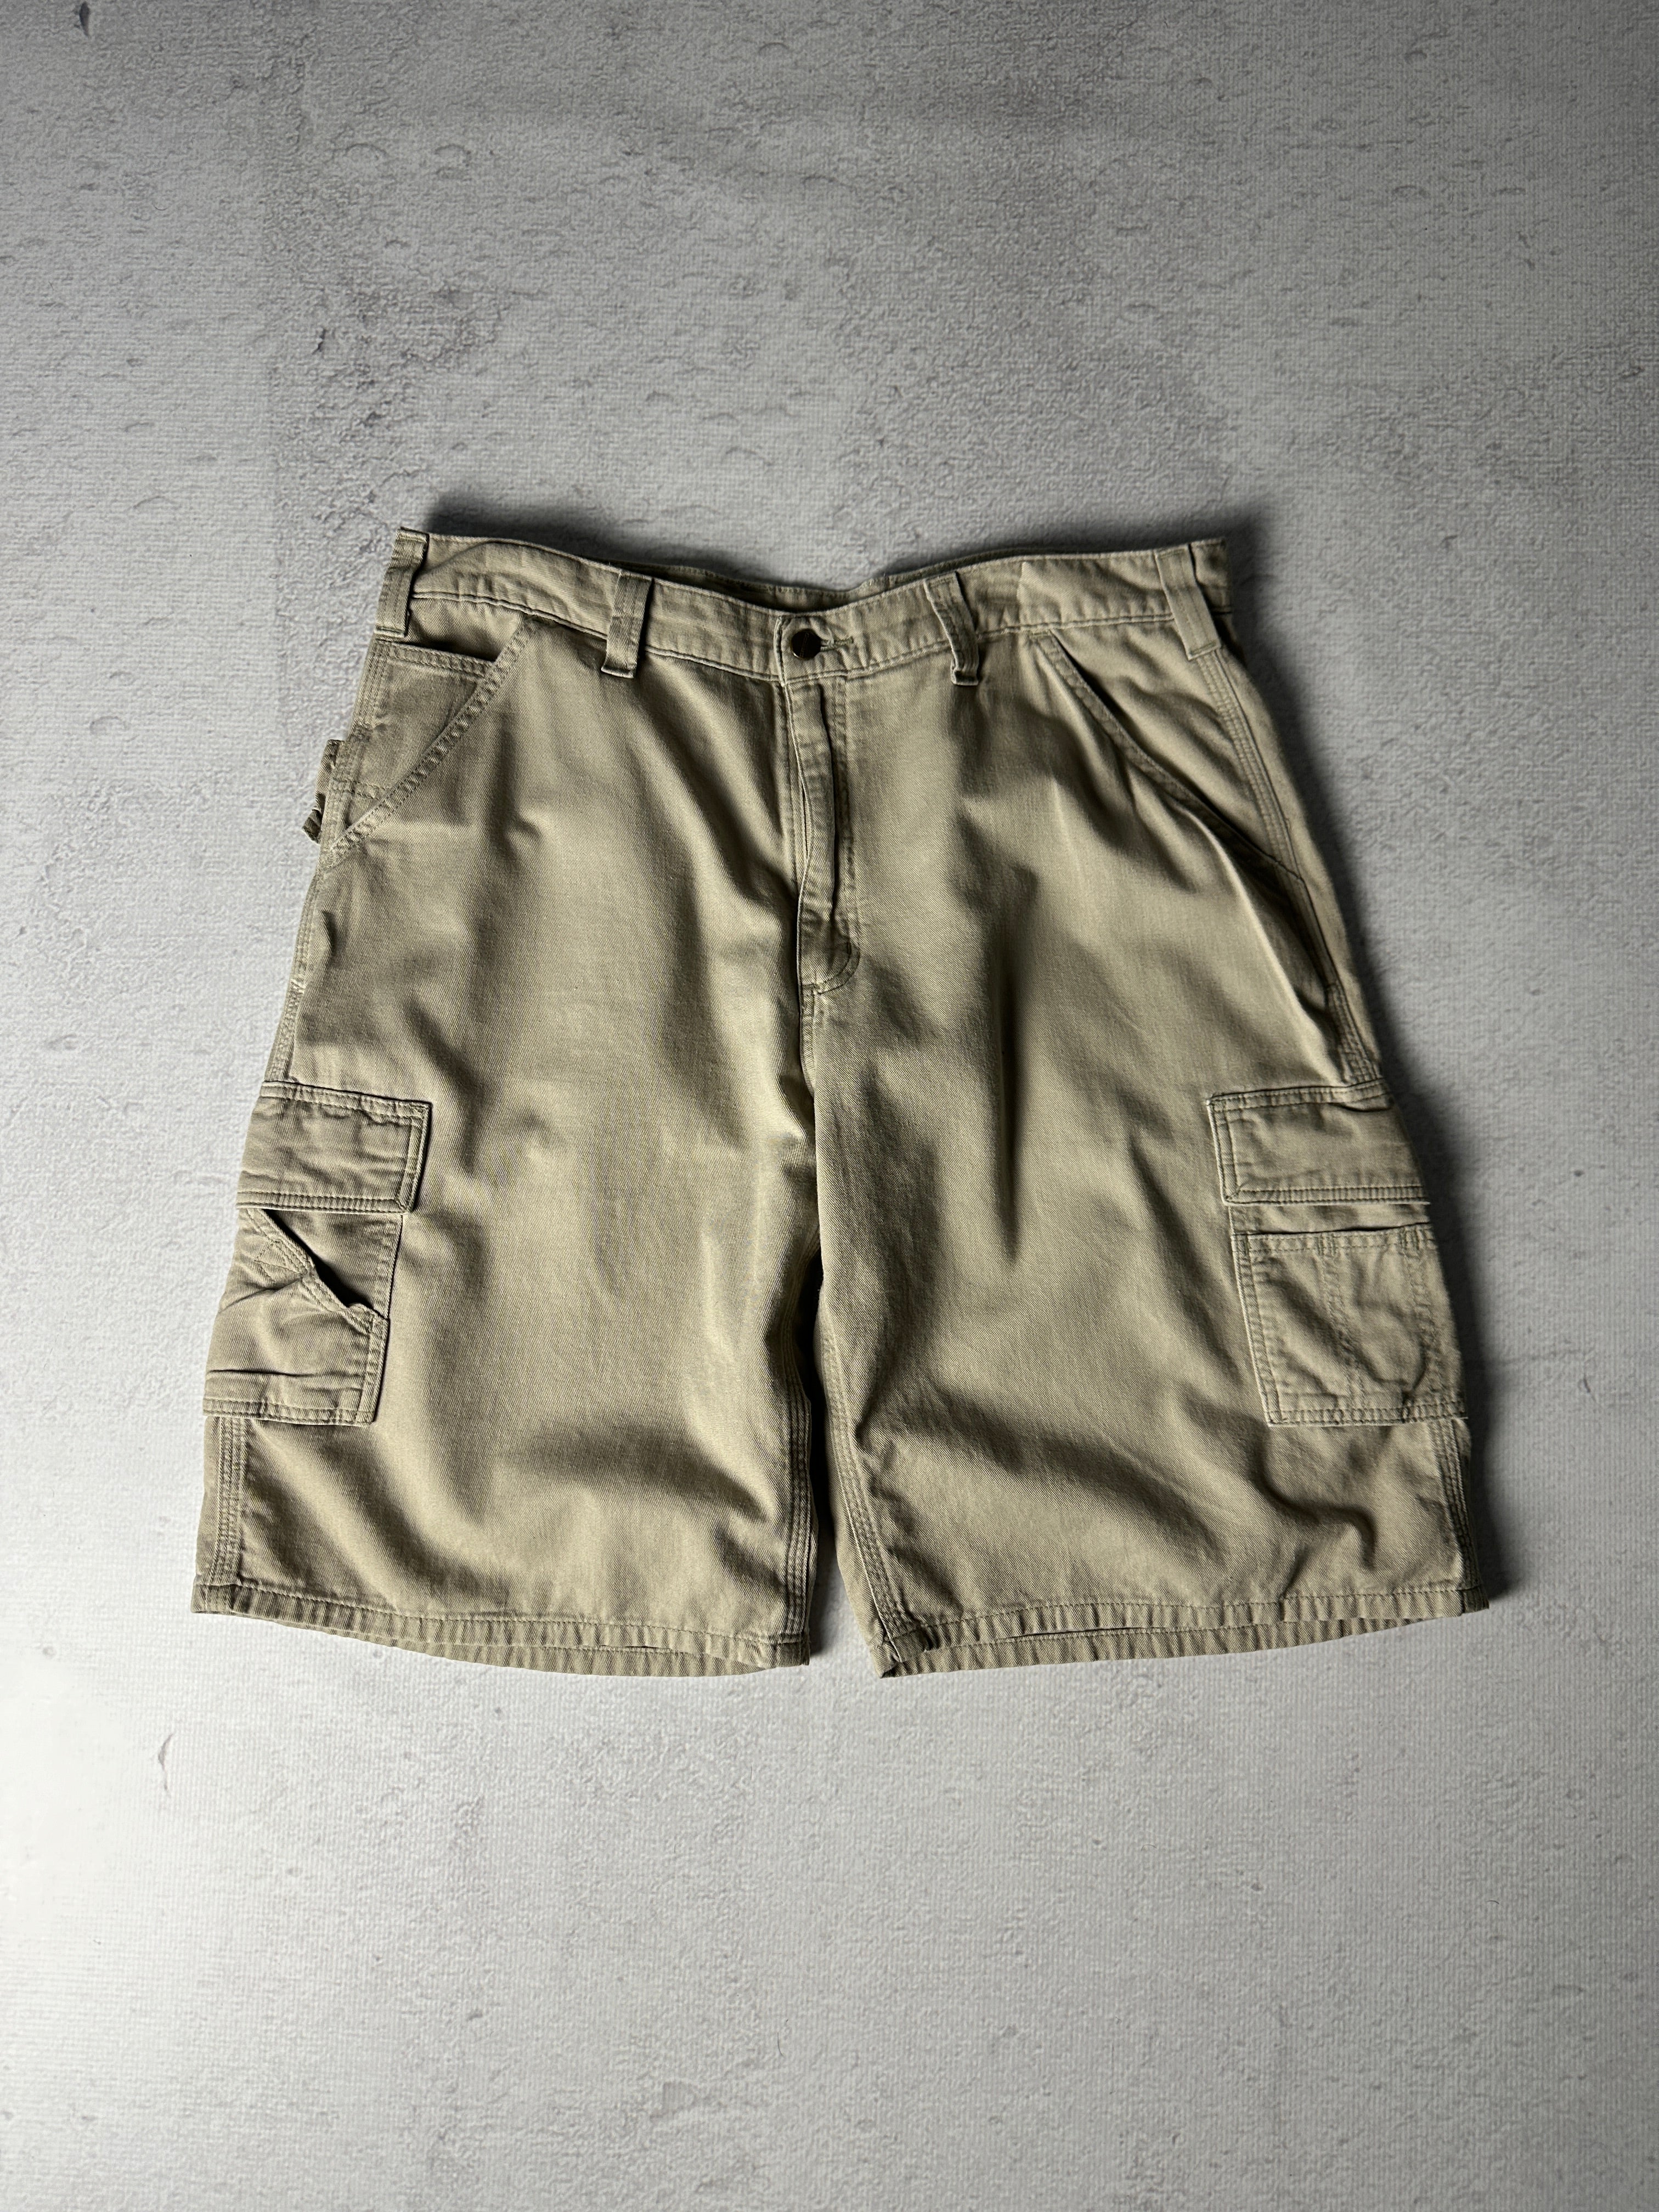 Vintage Carhartt Cargo Shorts - Men's 38